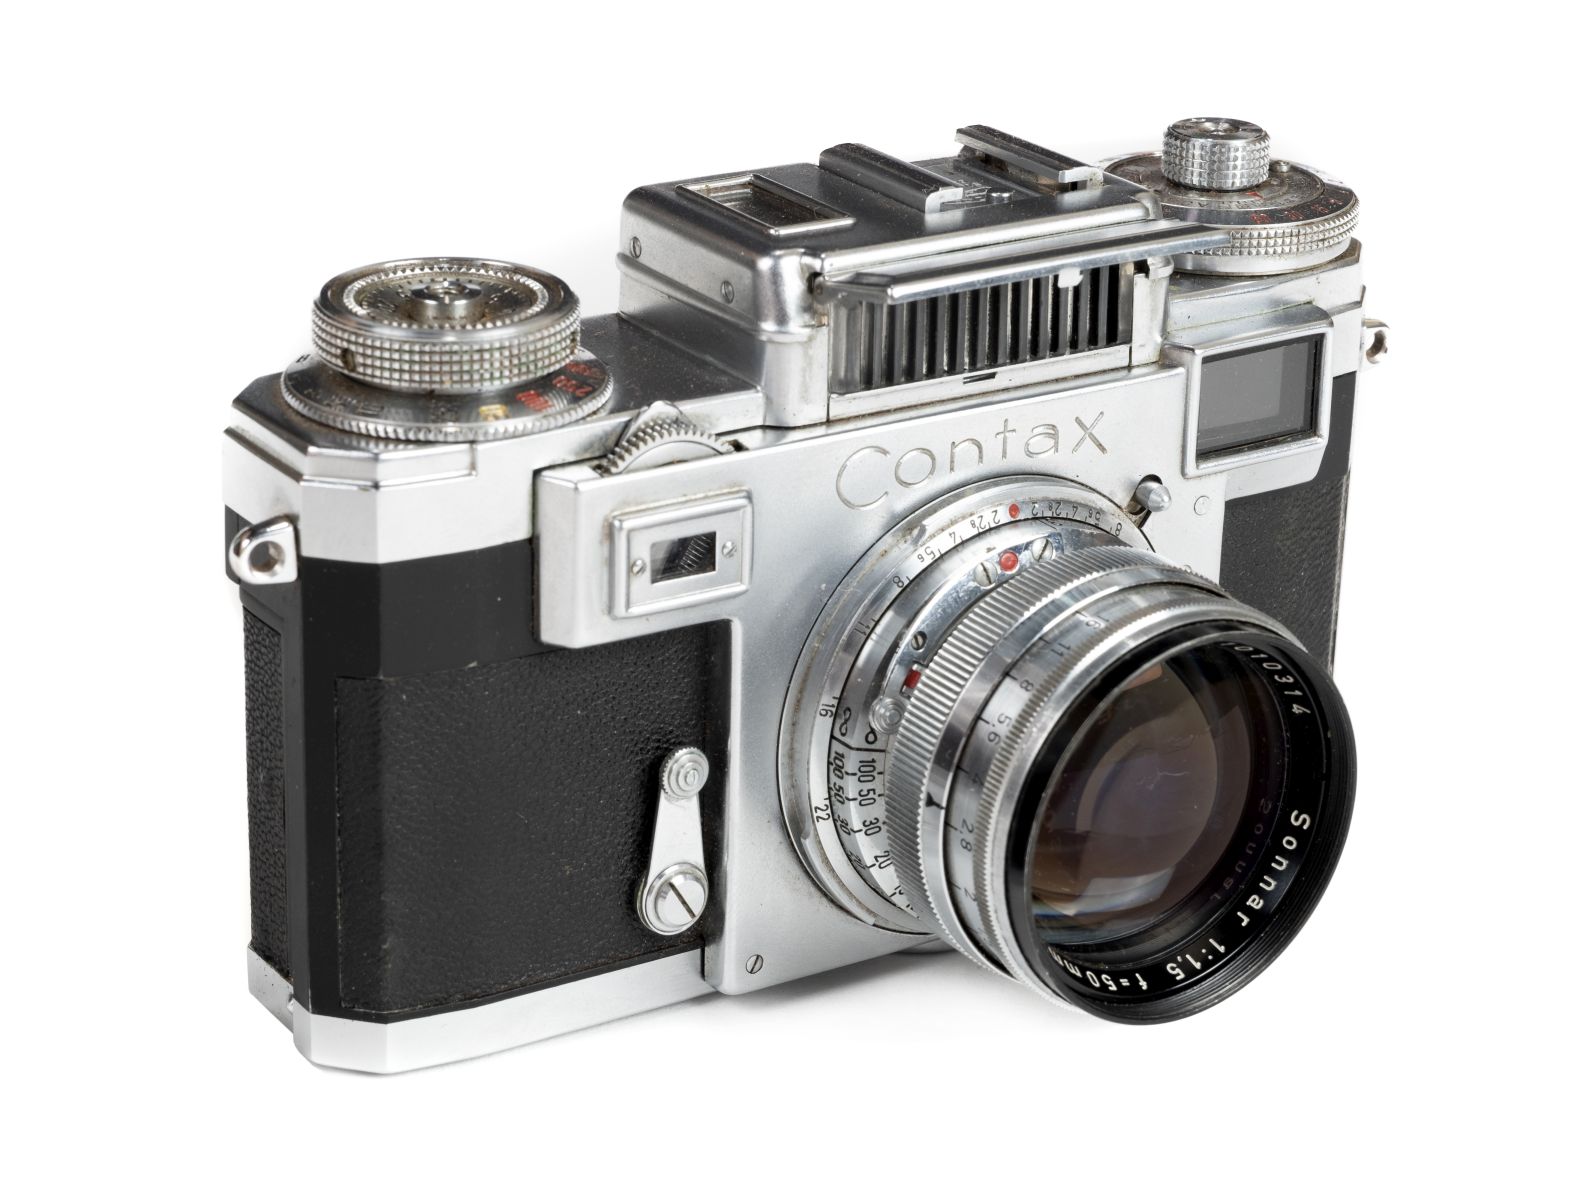 Lot 304 - Contax IIIa rangefinder camera with